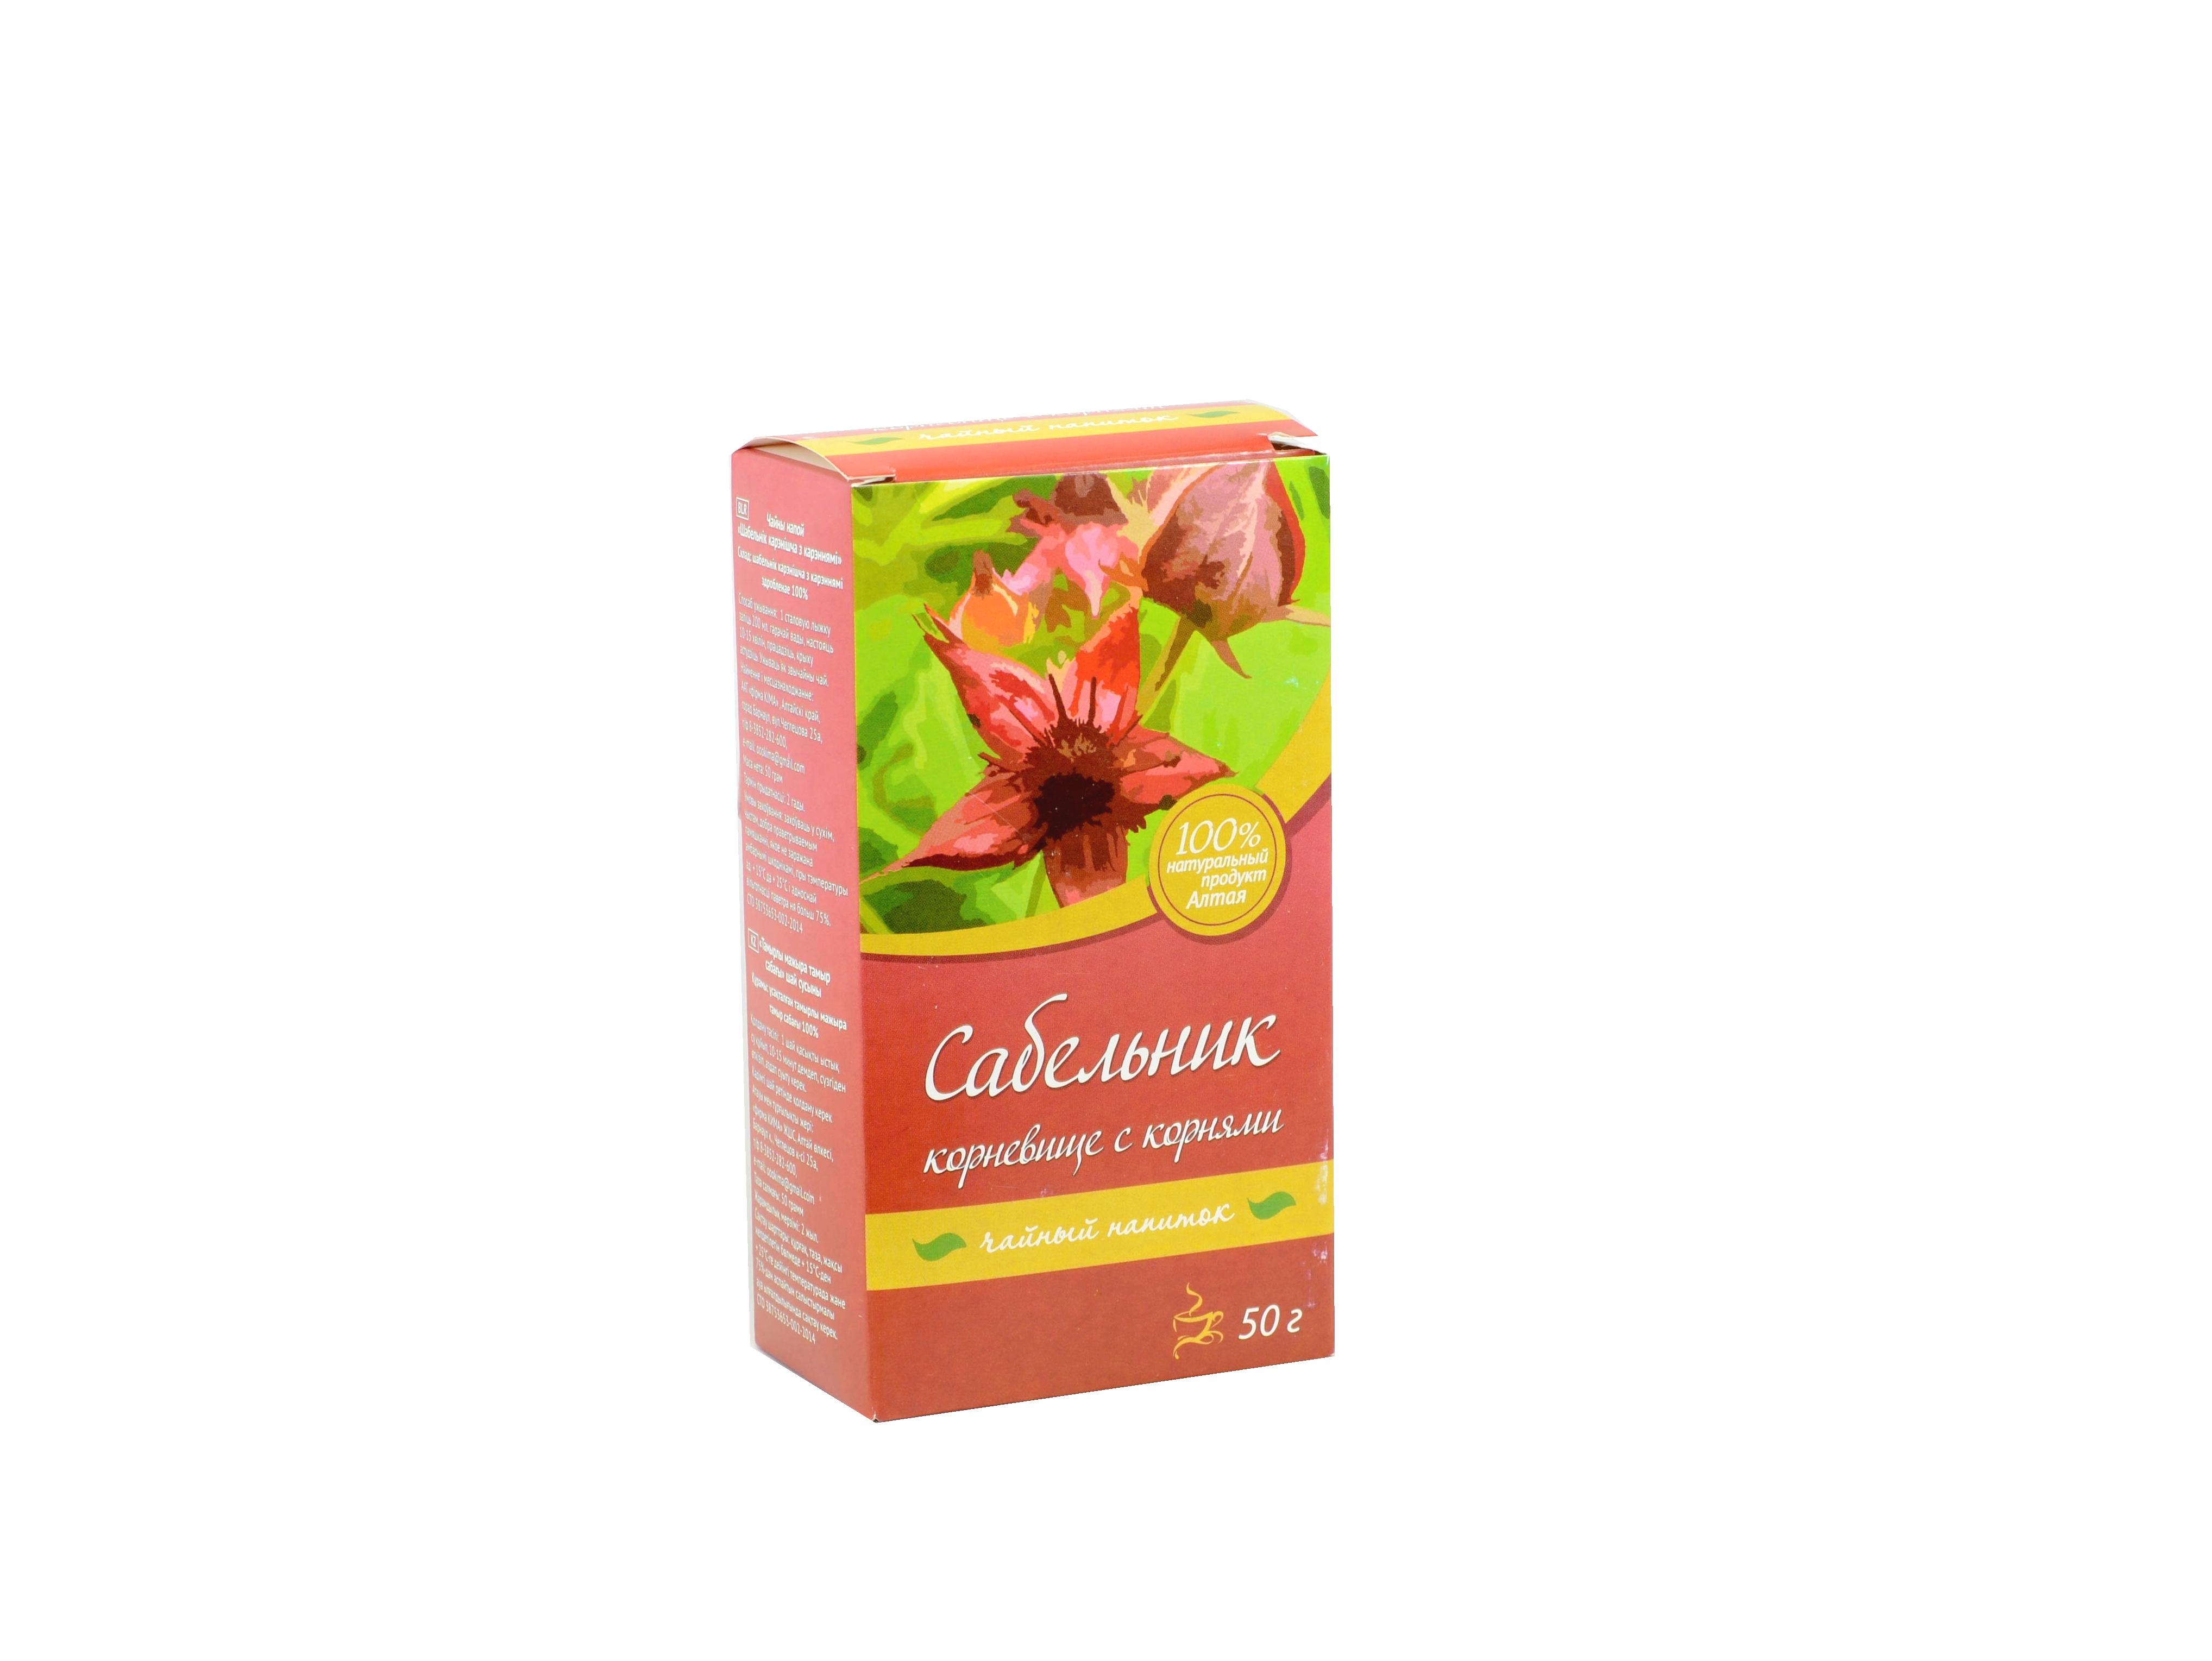 Čaj z mochny bahenní – Firma Kima - 50 g